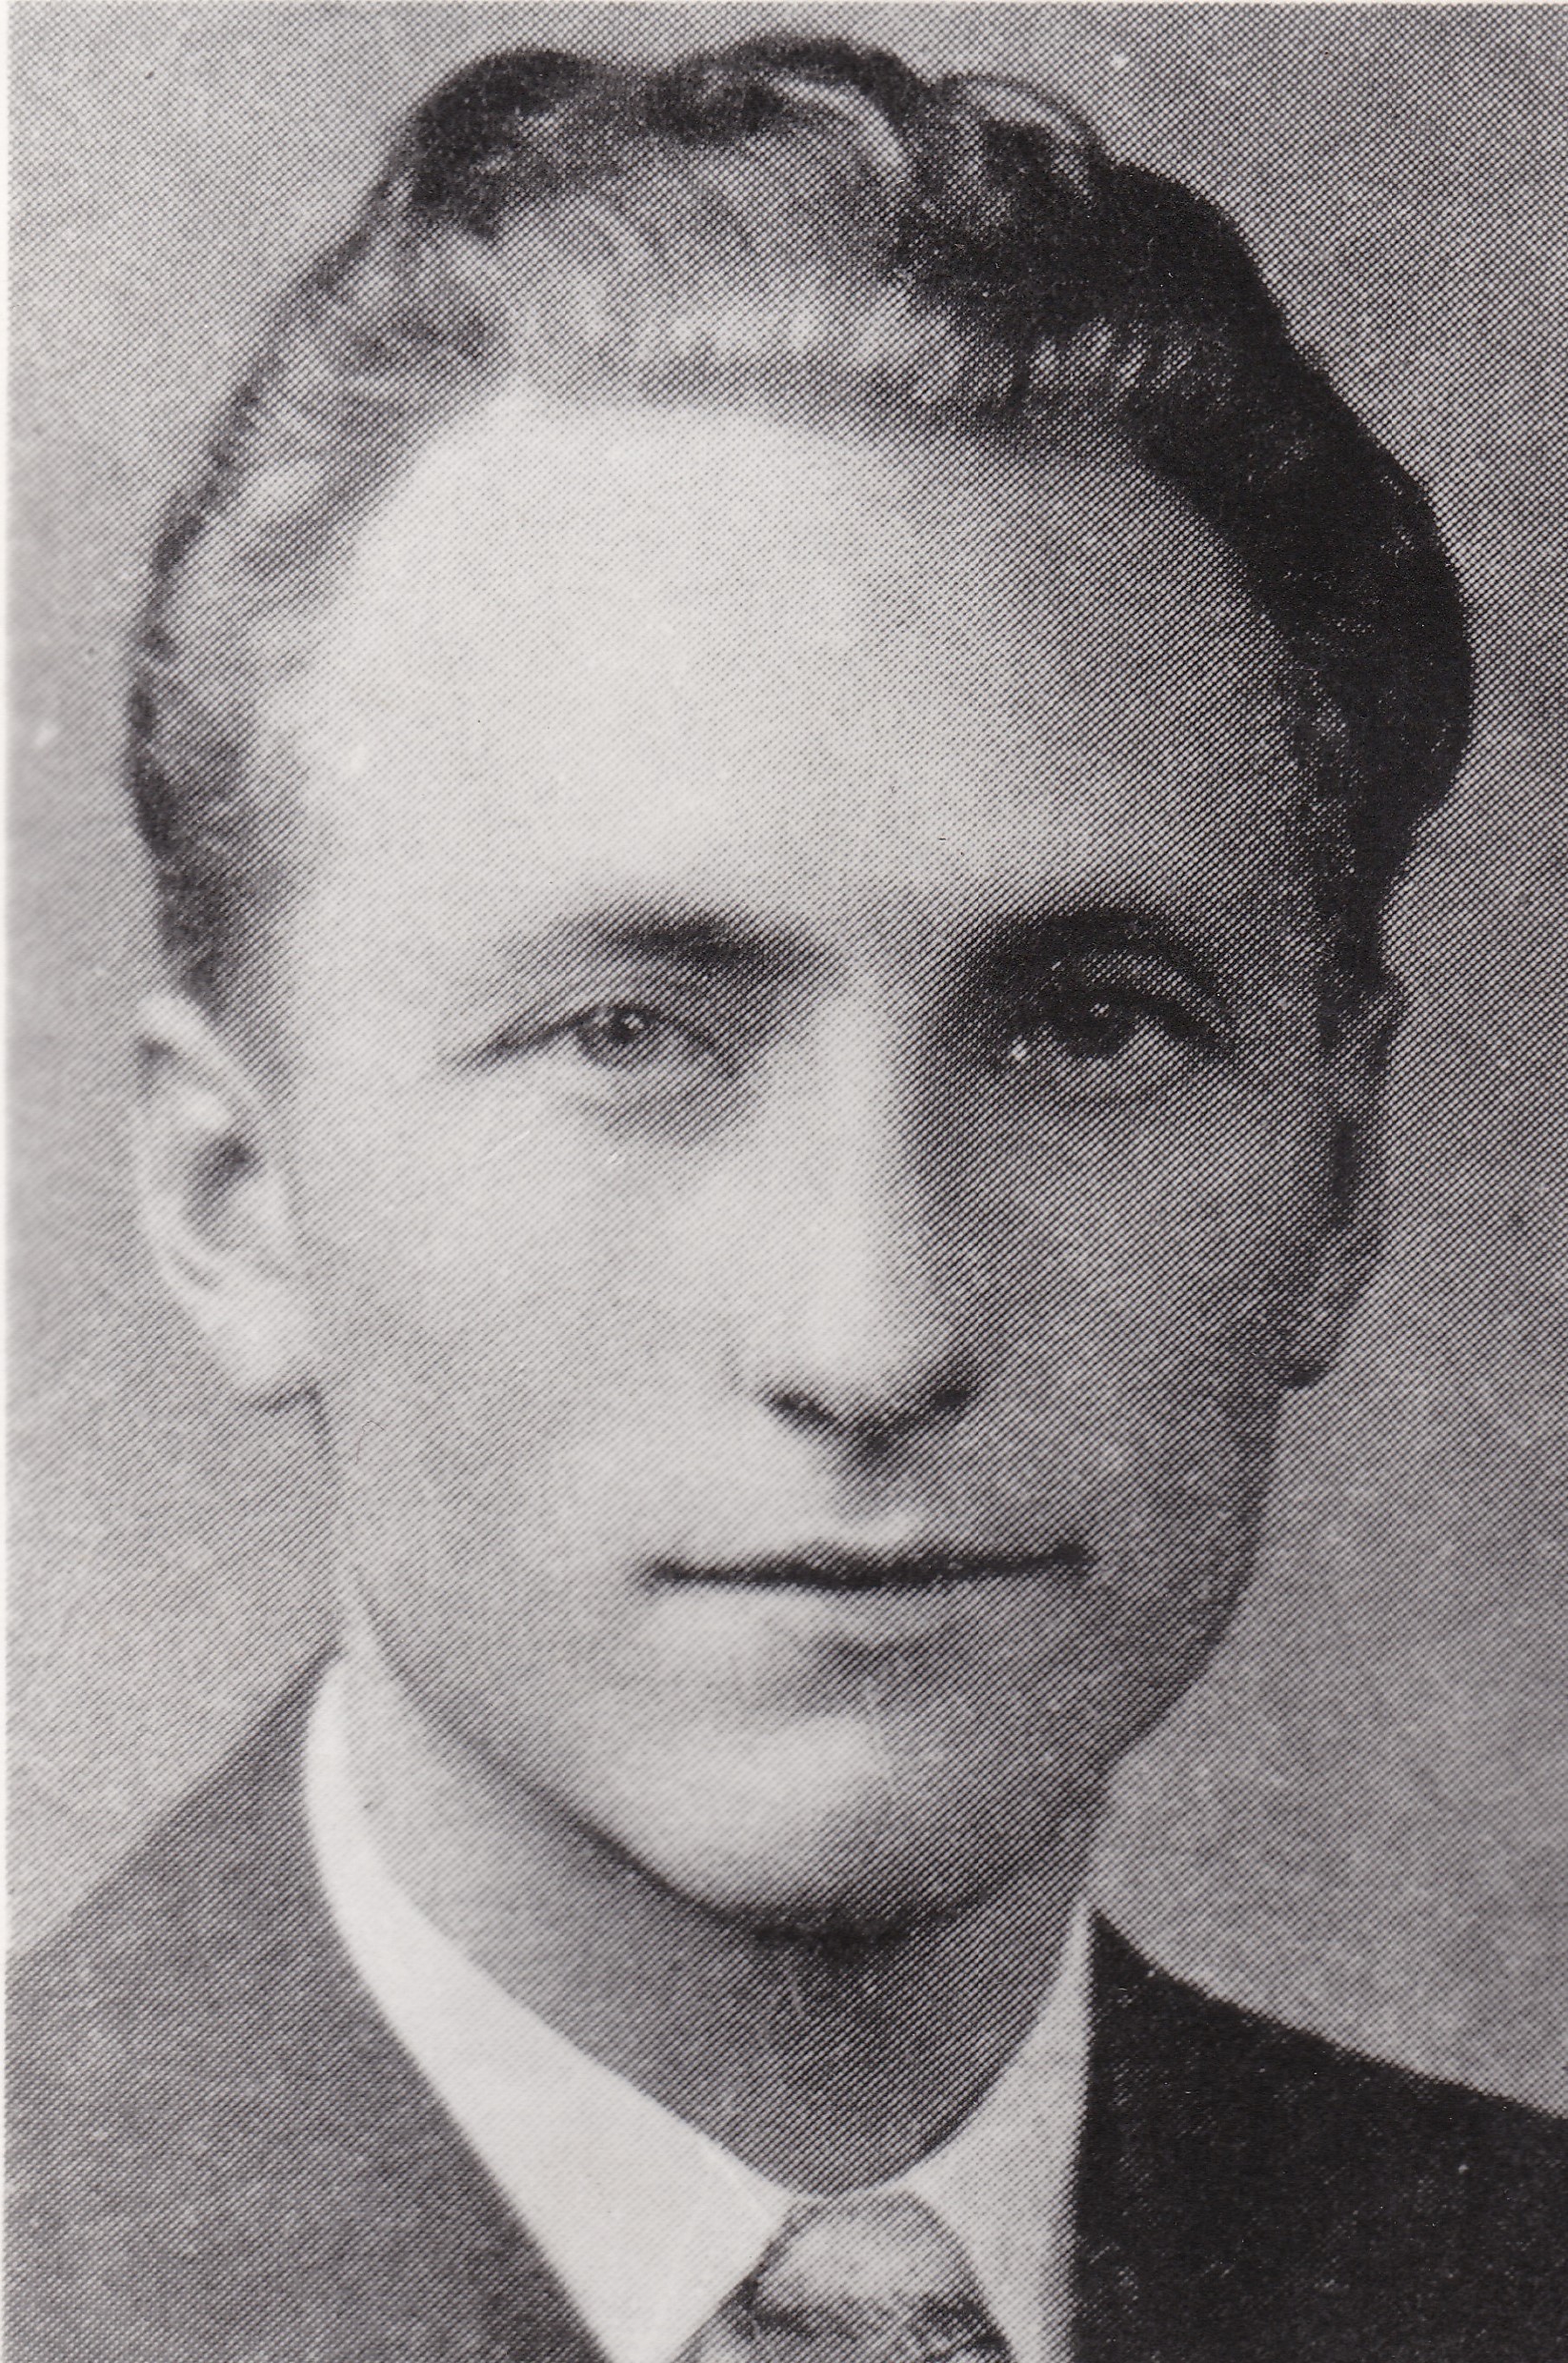 Soelberg, Charles La Vern